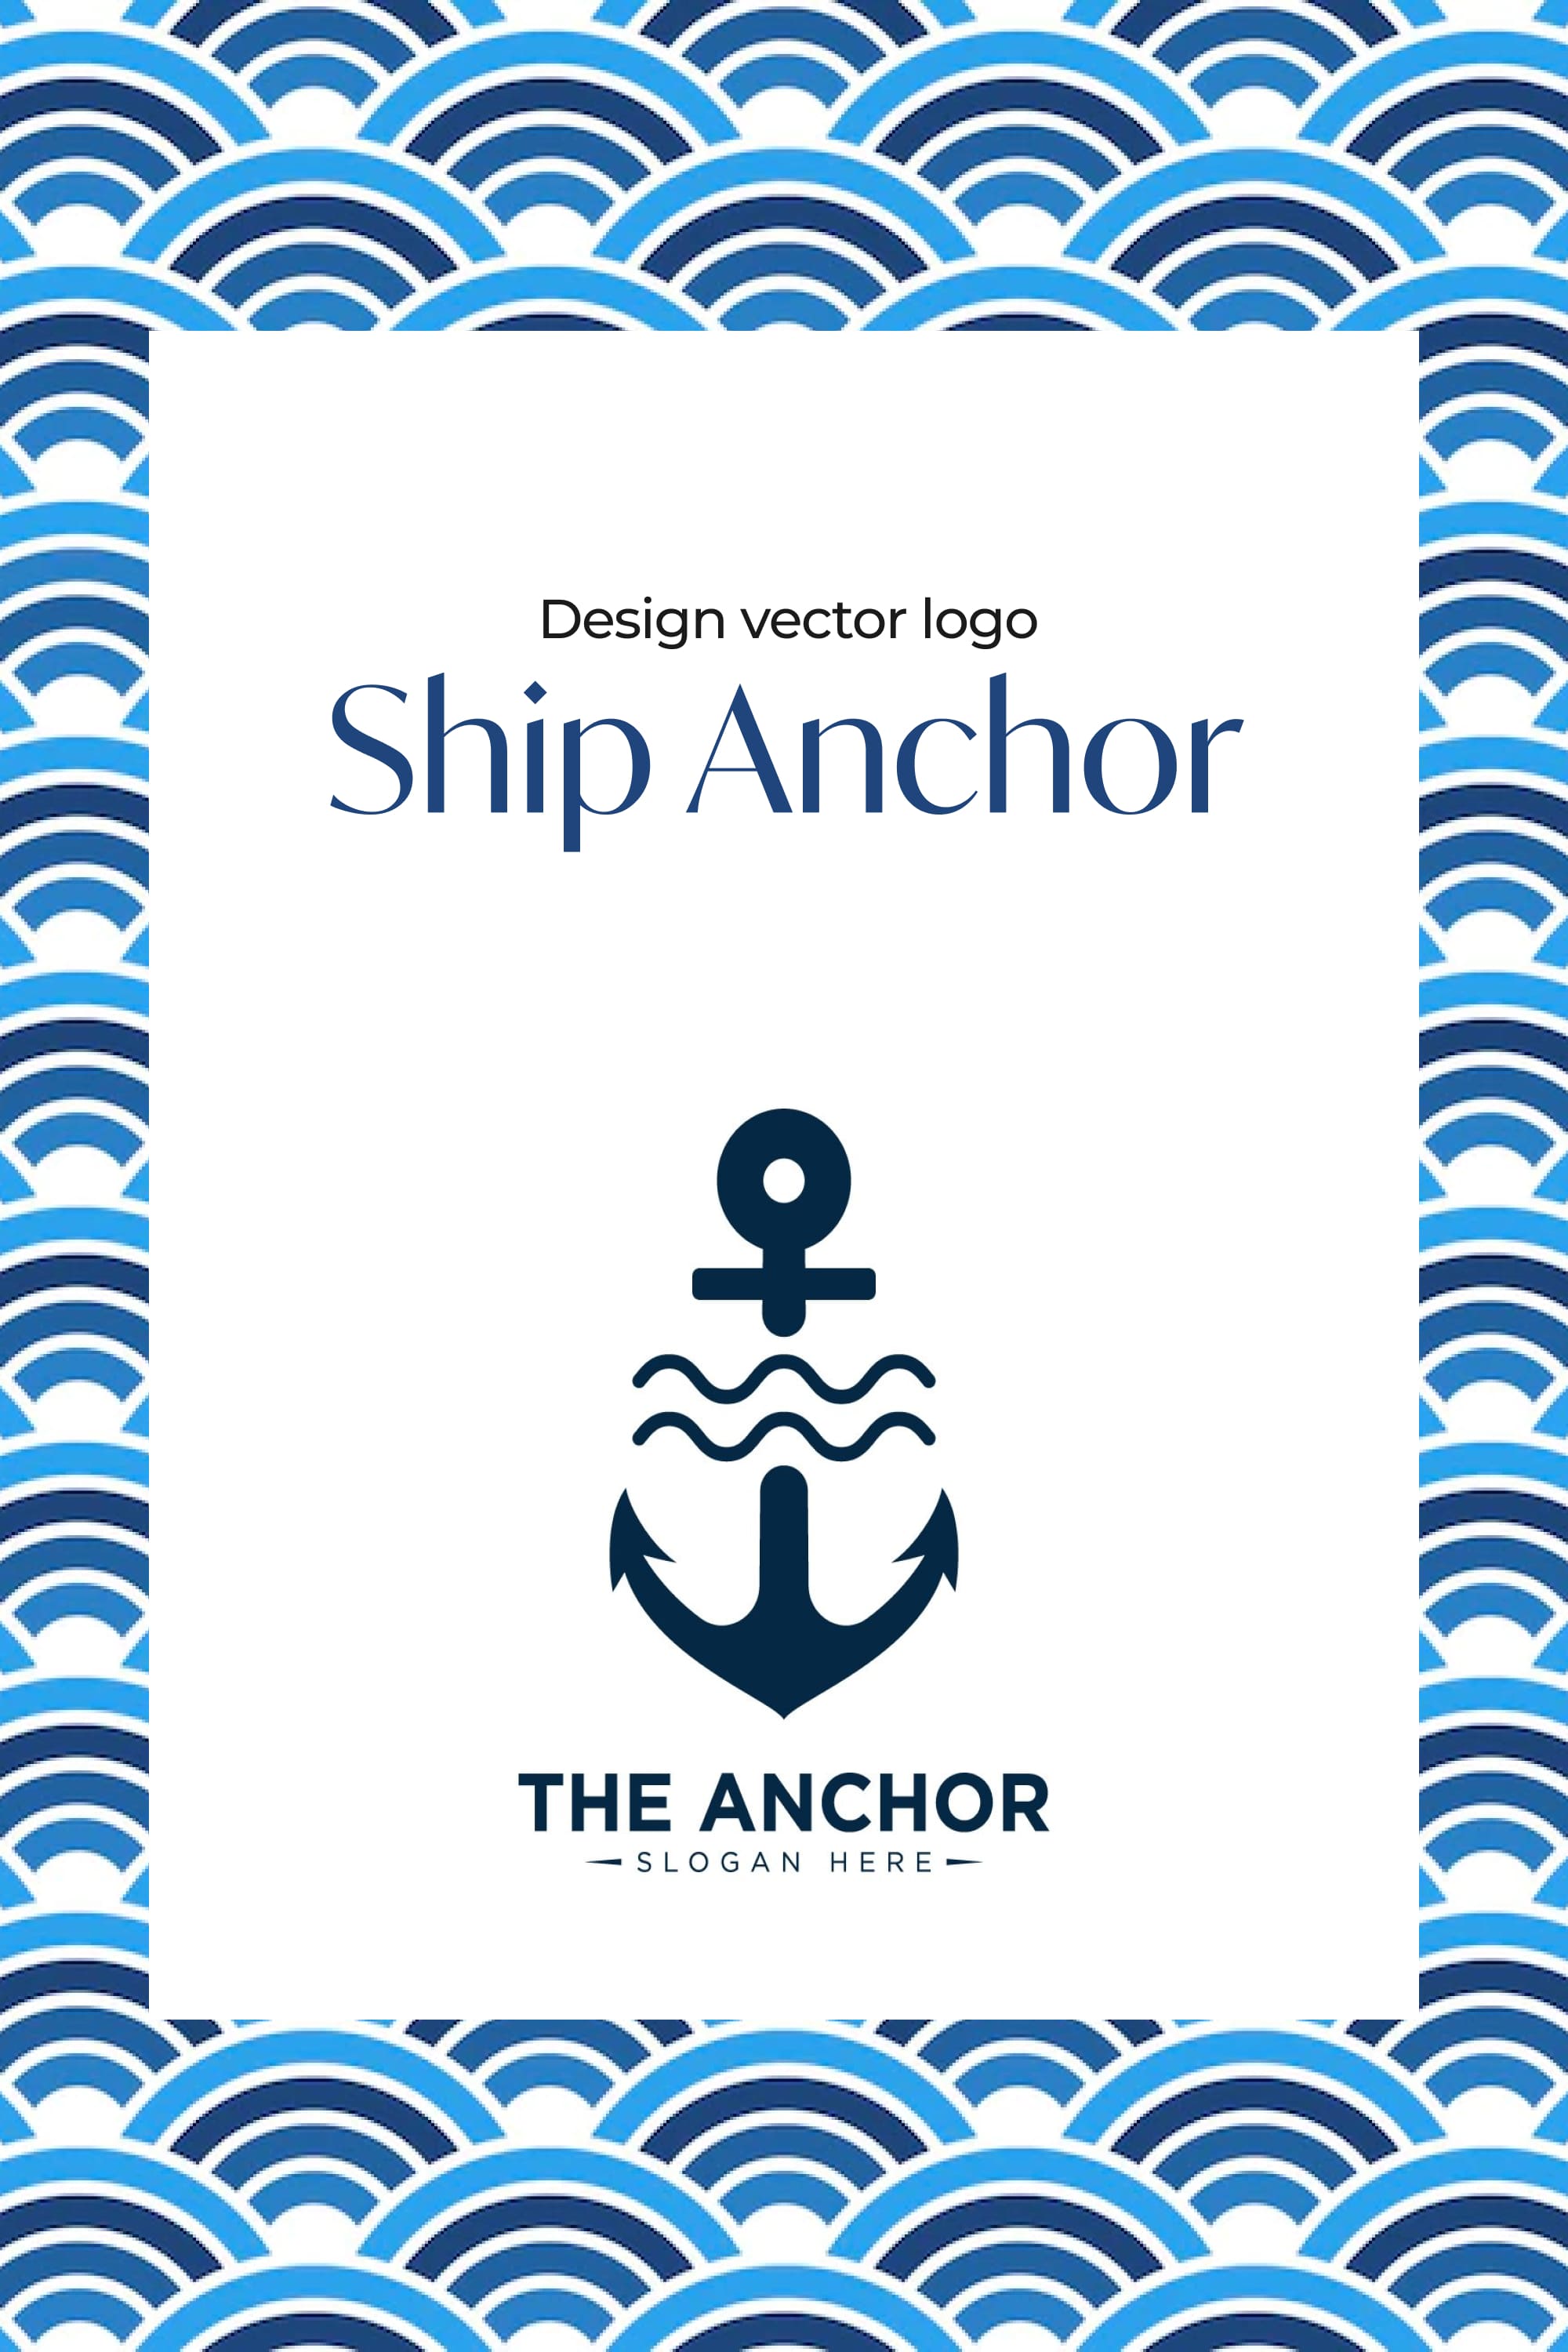 ship anchor logo pinterest